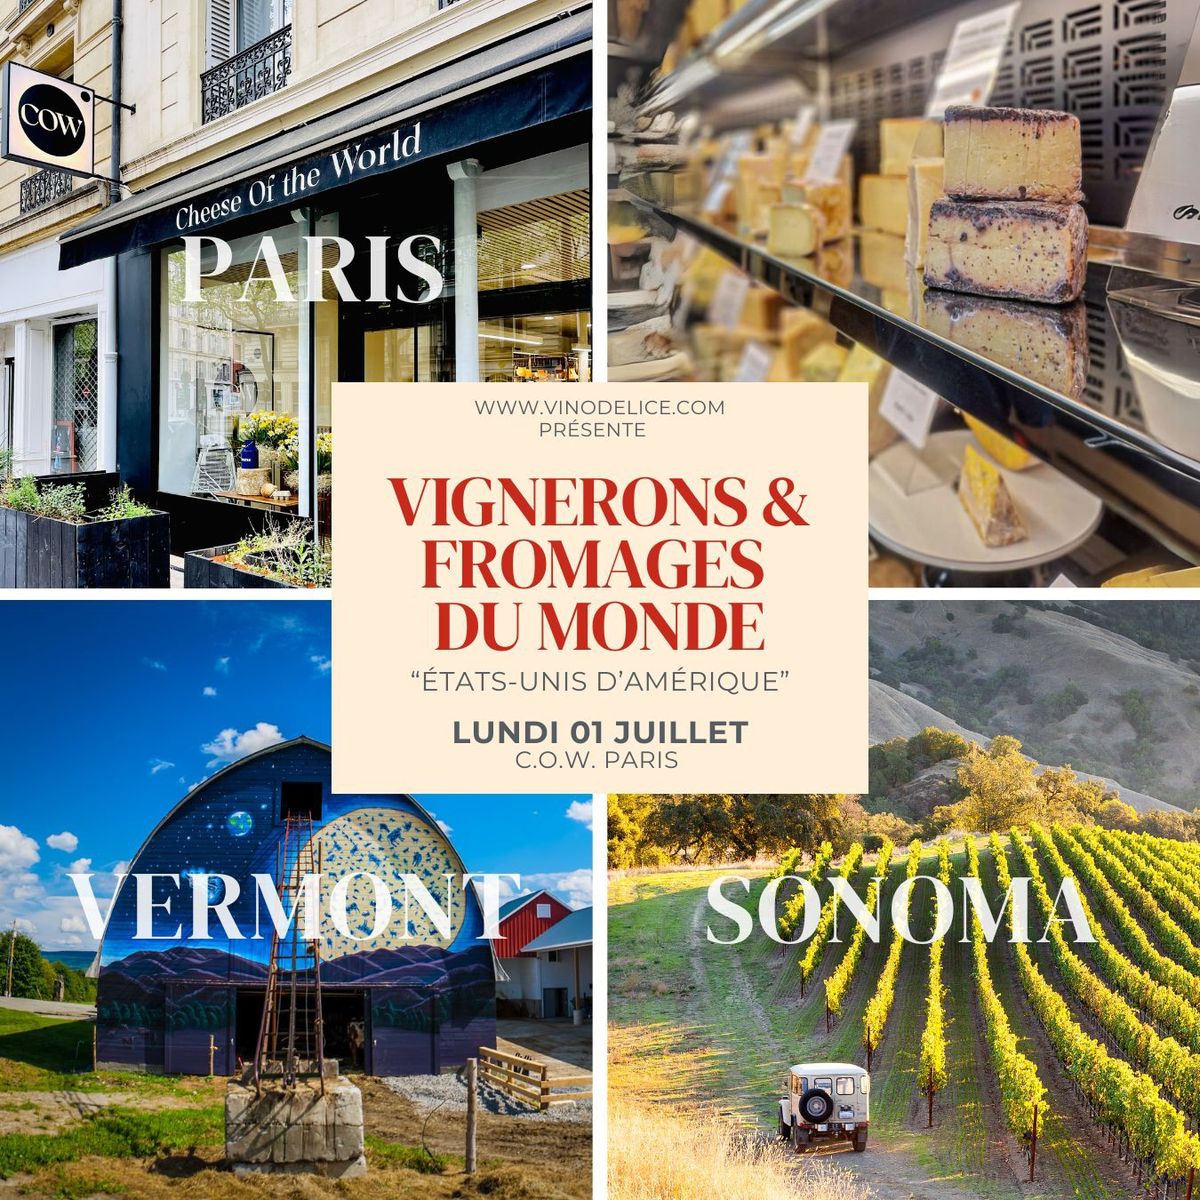 D\u00e9gustation Vignerons & Fromages du Monde "ETATS-UNIS D\u2019AMERIQUE\u201d